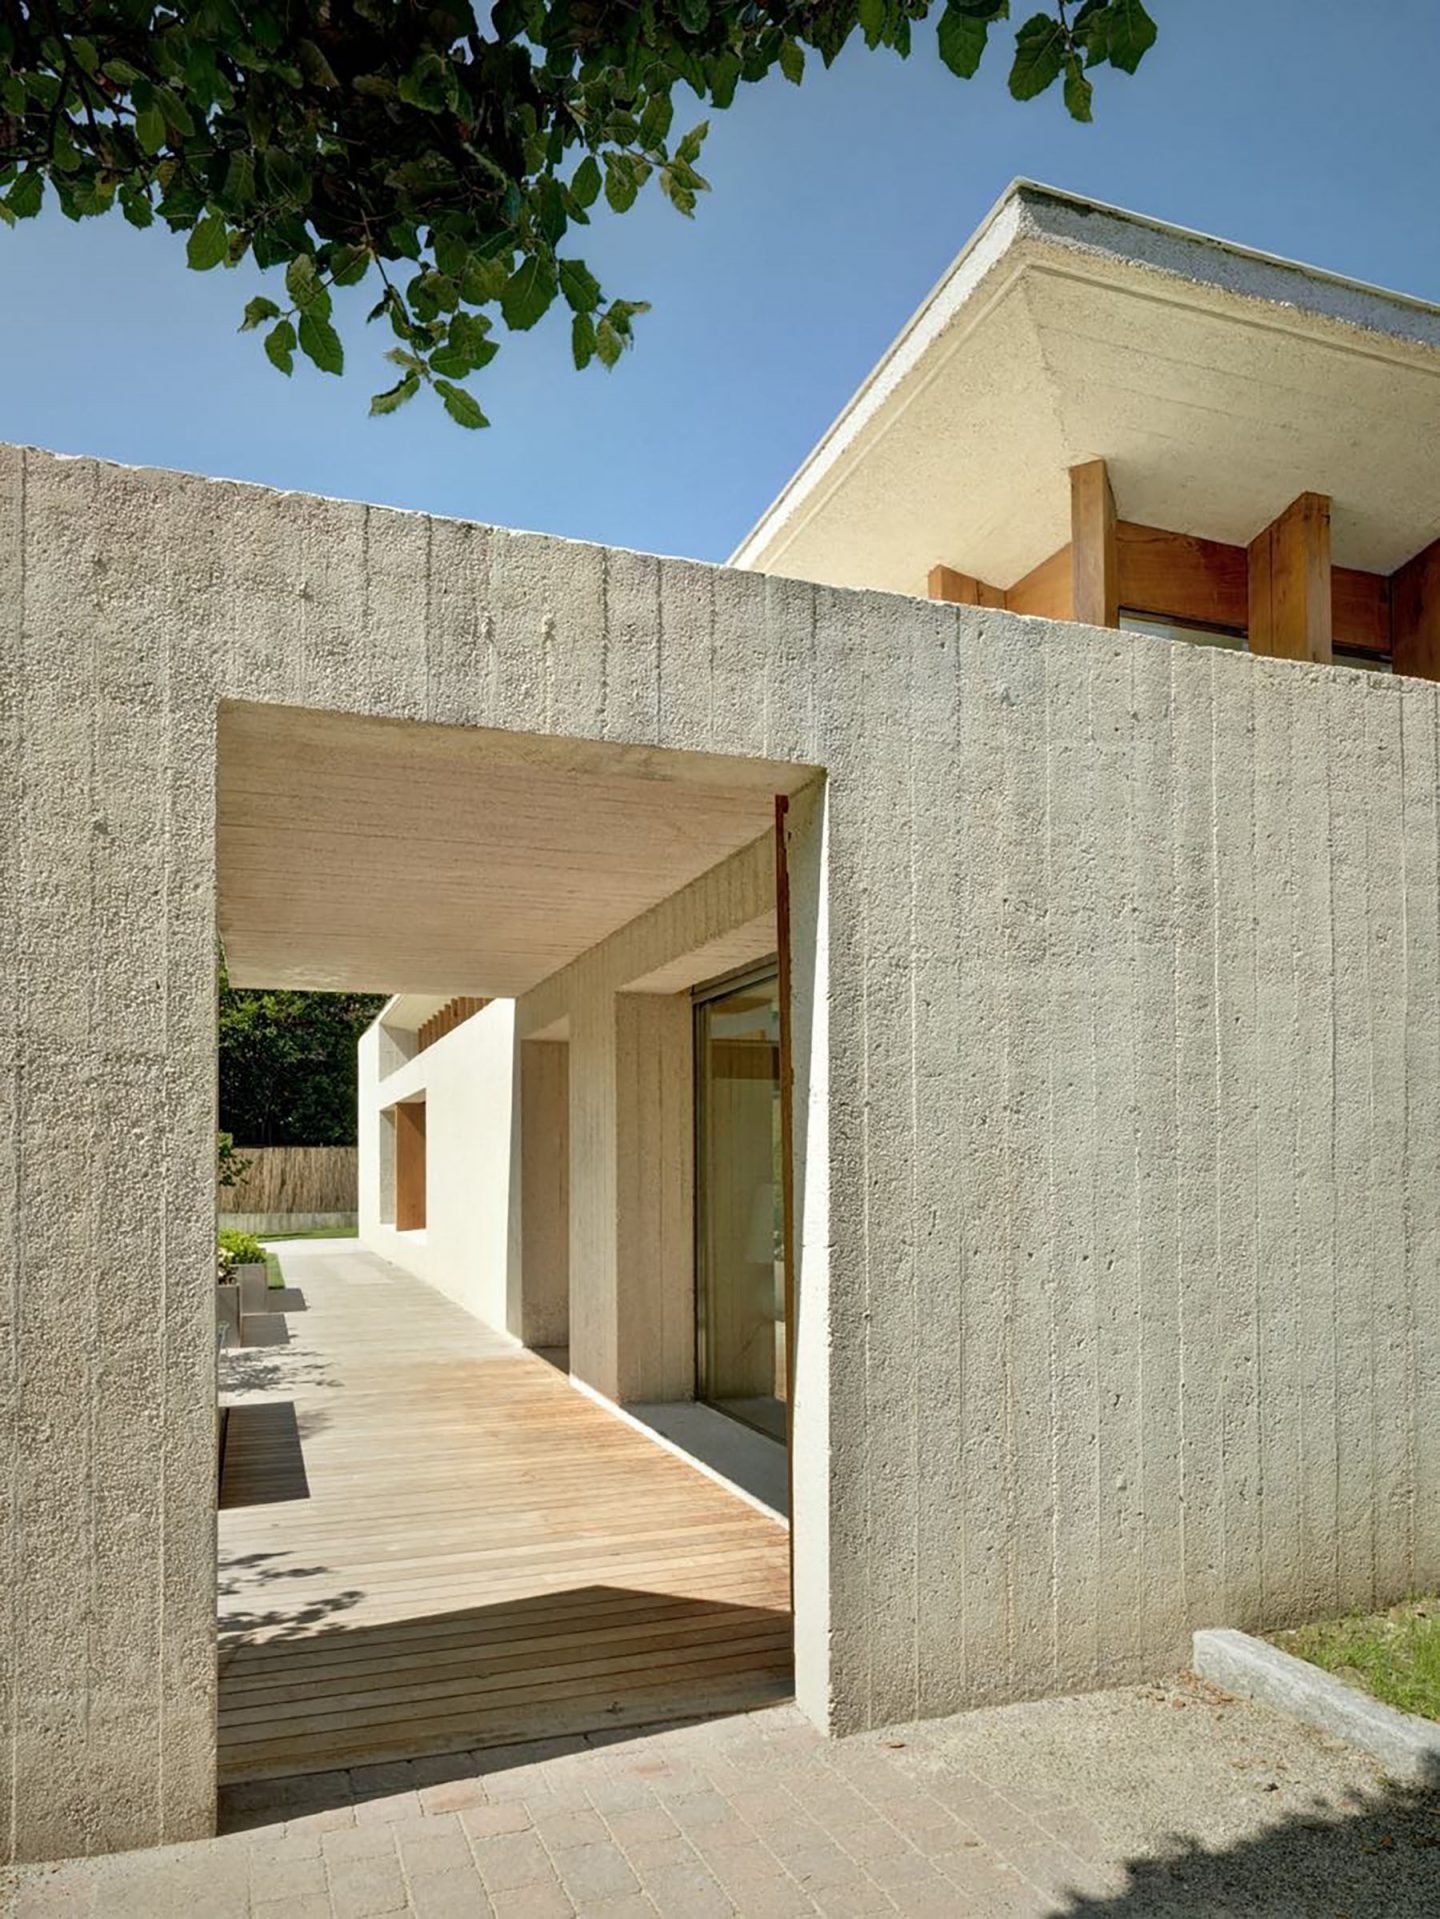 iGNANT-Architecture-Marco-Ortalli-Casa-Crb-004